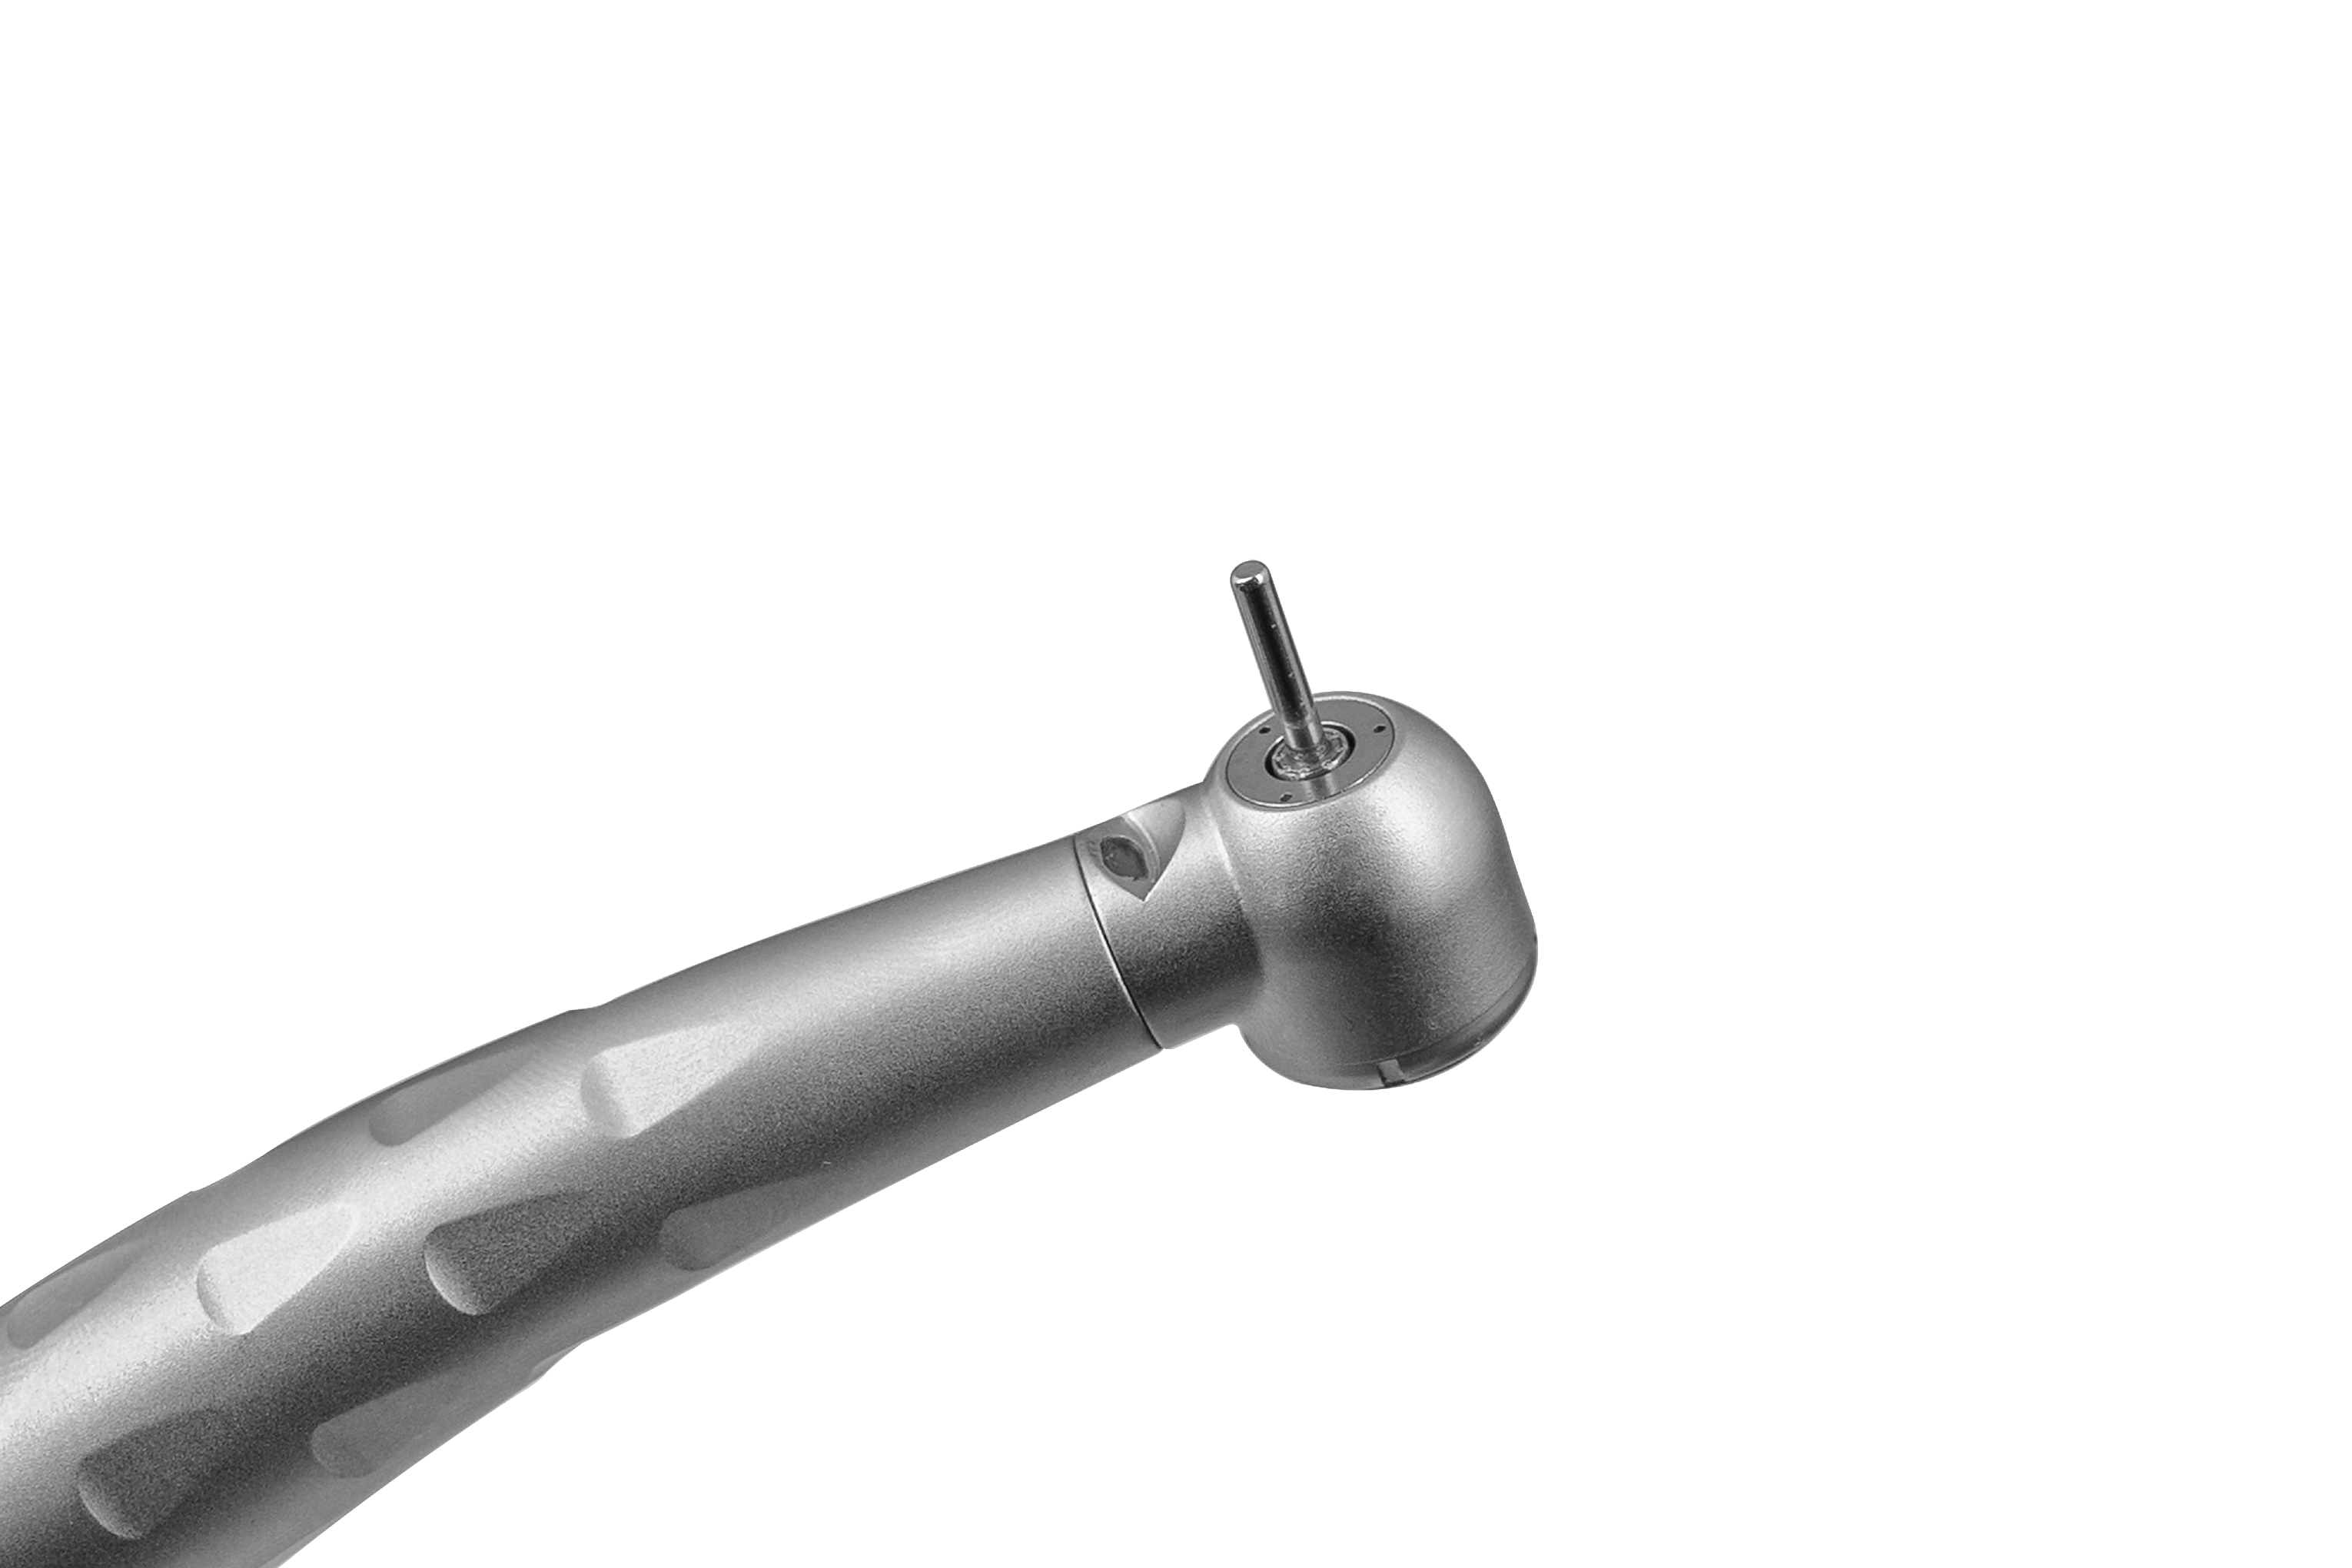 Наконечник стоматологический турбинный ЭУРМЕД ТС-001 с подсветкой и быстросъемным переходником. Фото N7